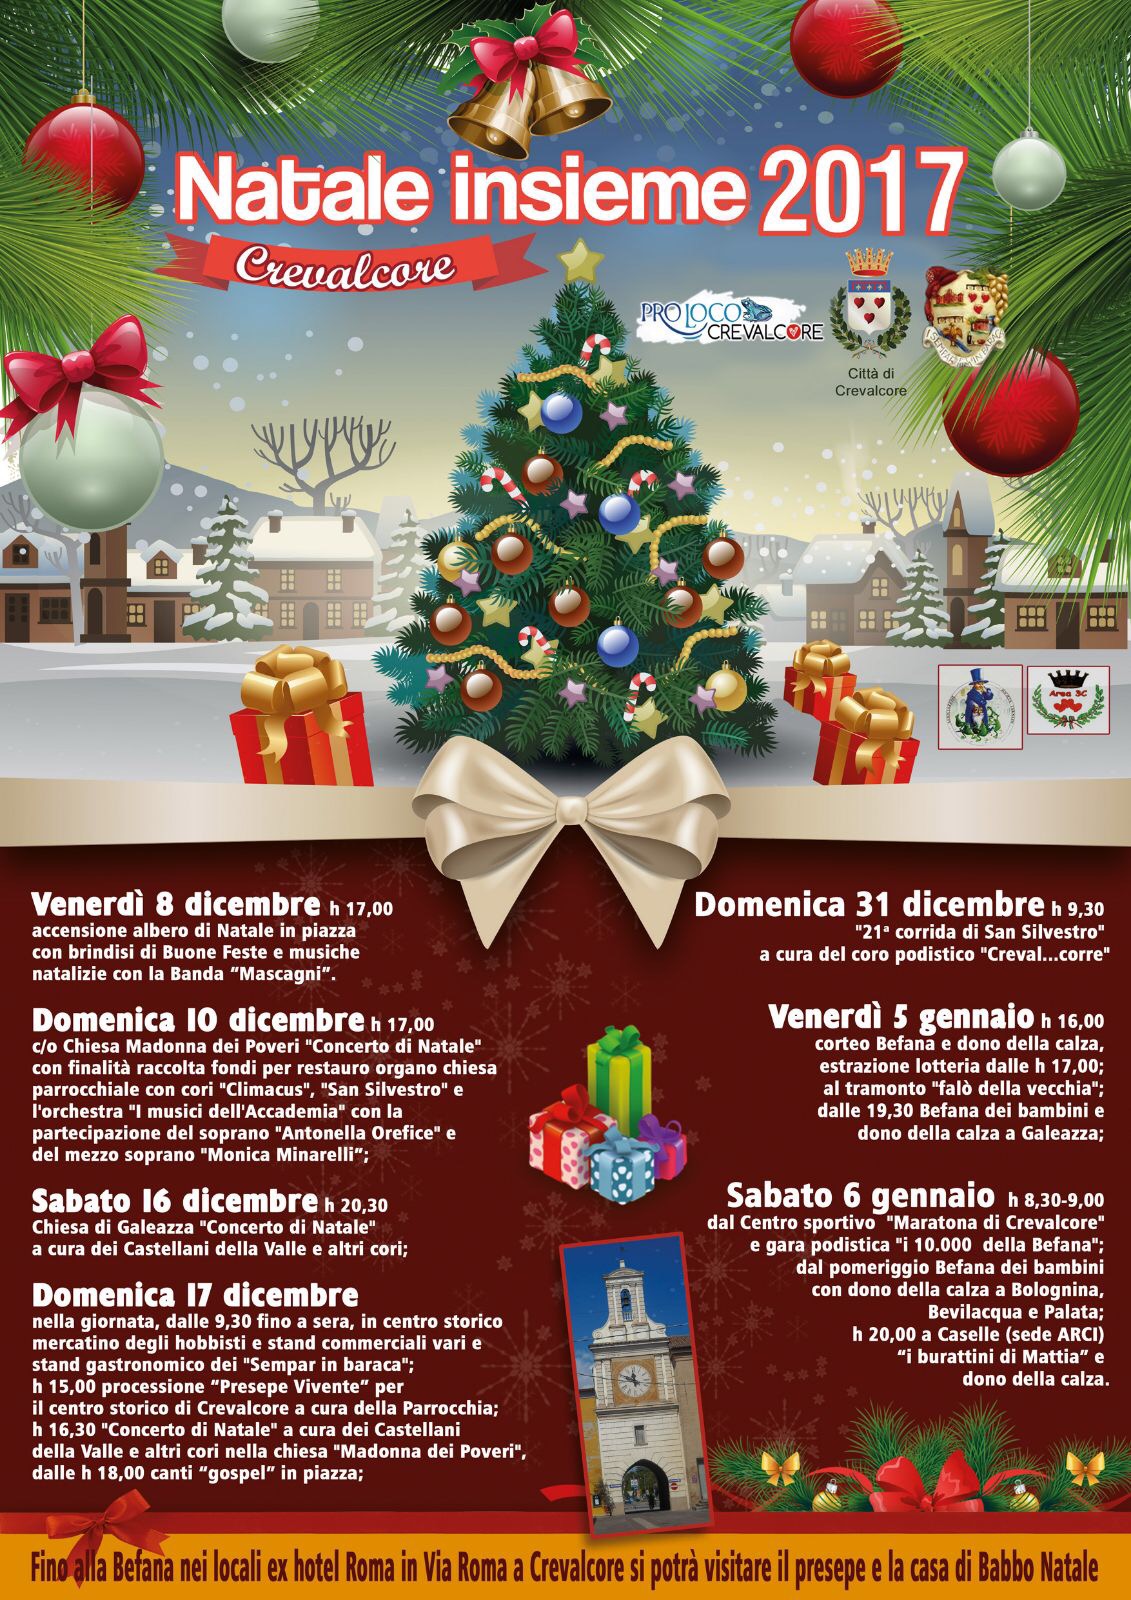 Babbo Natale 8 Dicembre Roma.Natale Insieme 2017 Proloco Crevalcore